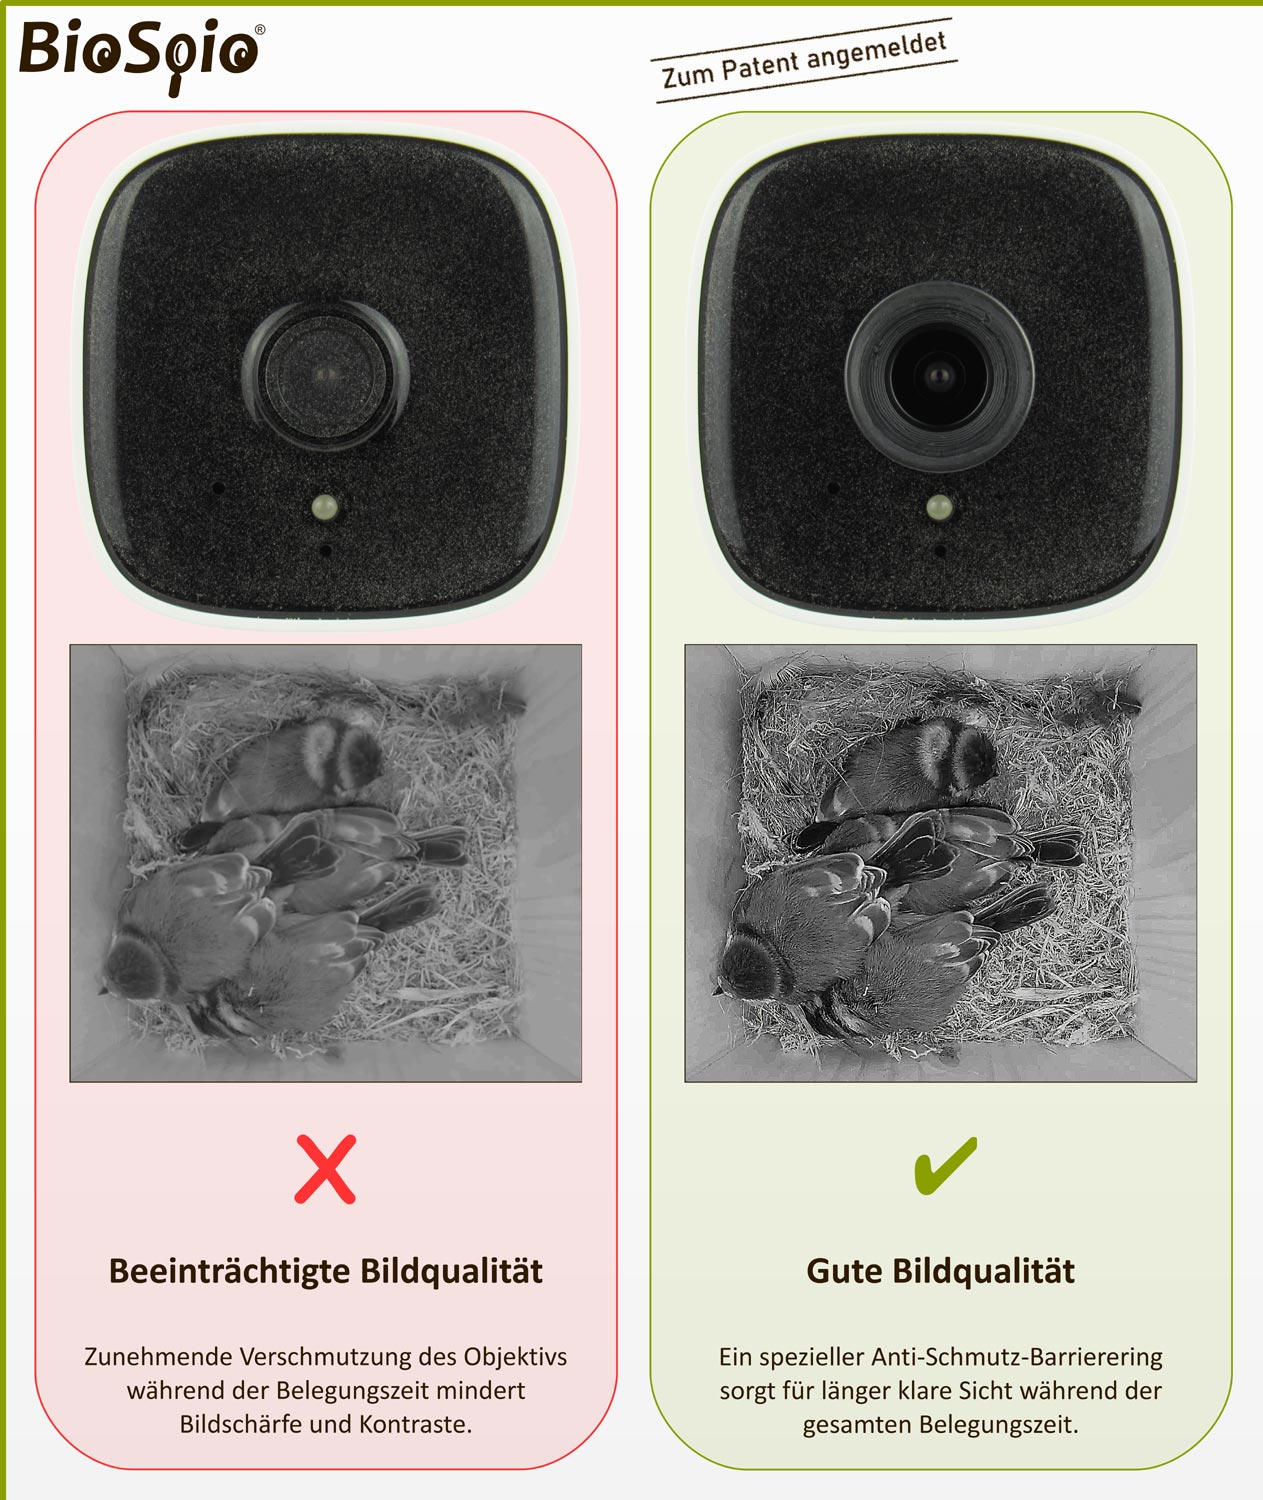 Nistkasten-Kamera Vergleich ohne und mit Anti-Schmutz-Barrierering